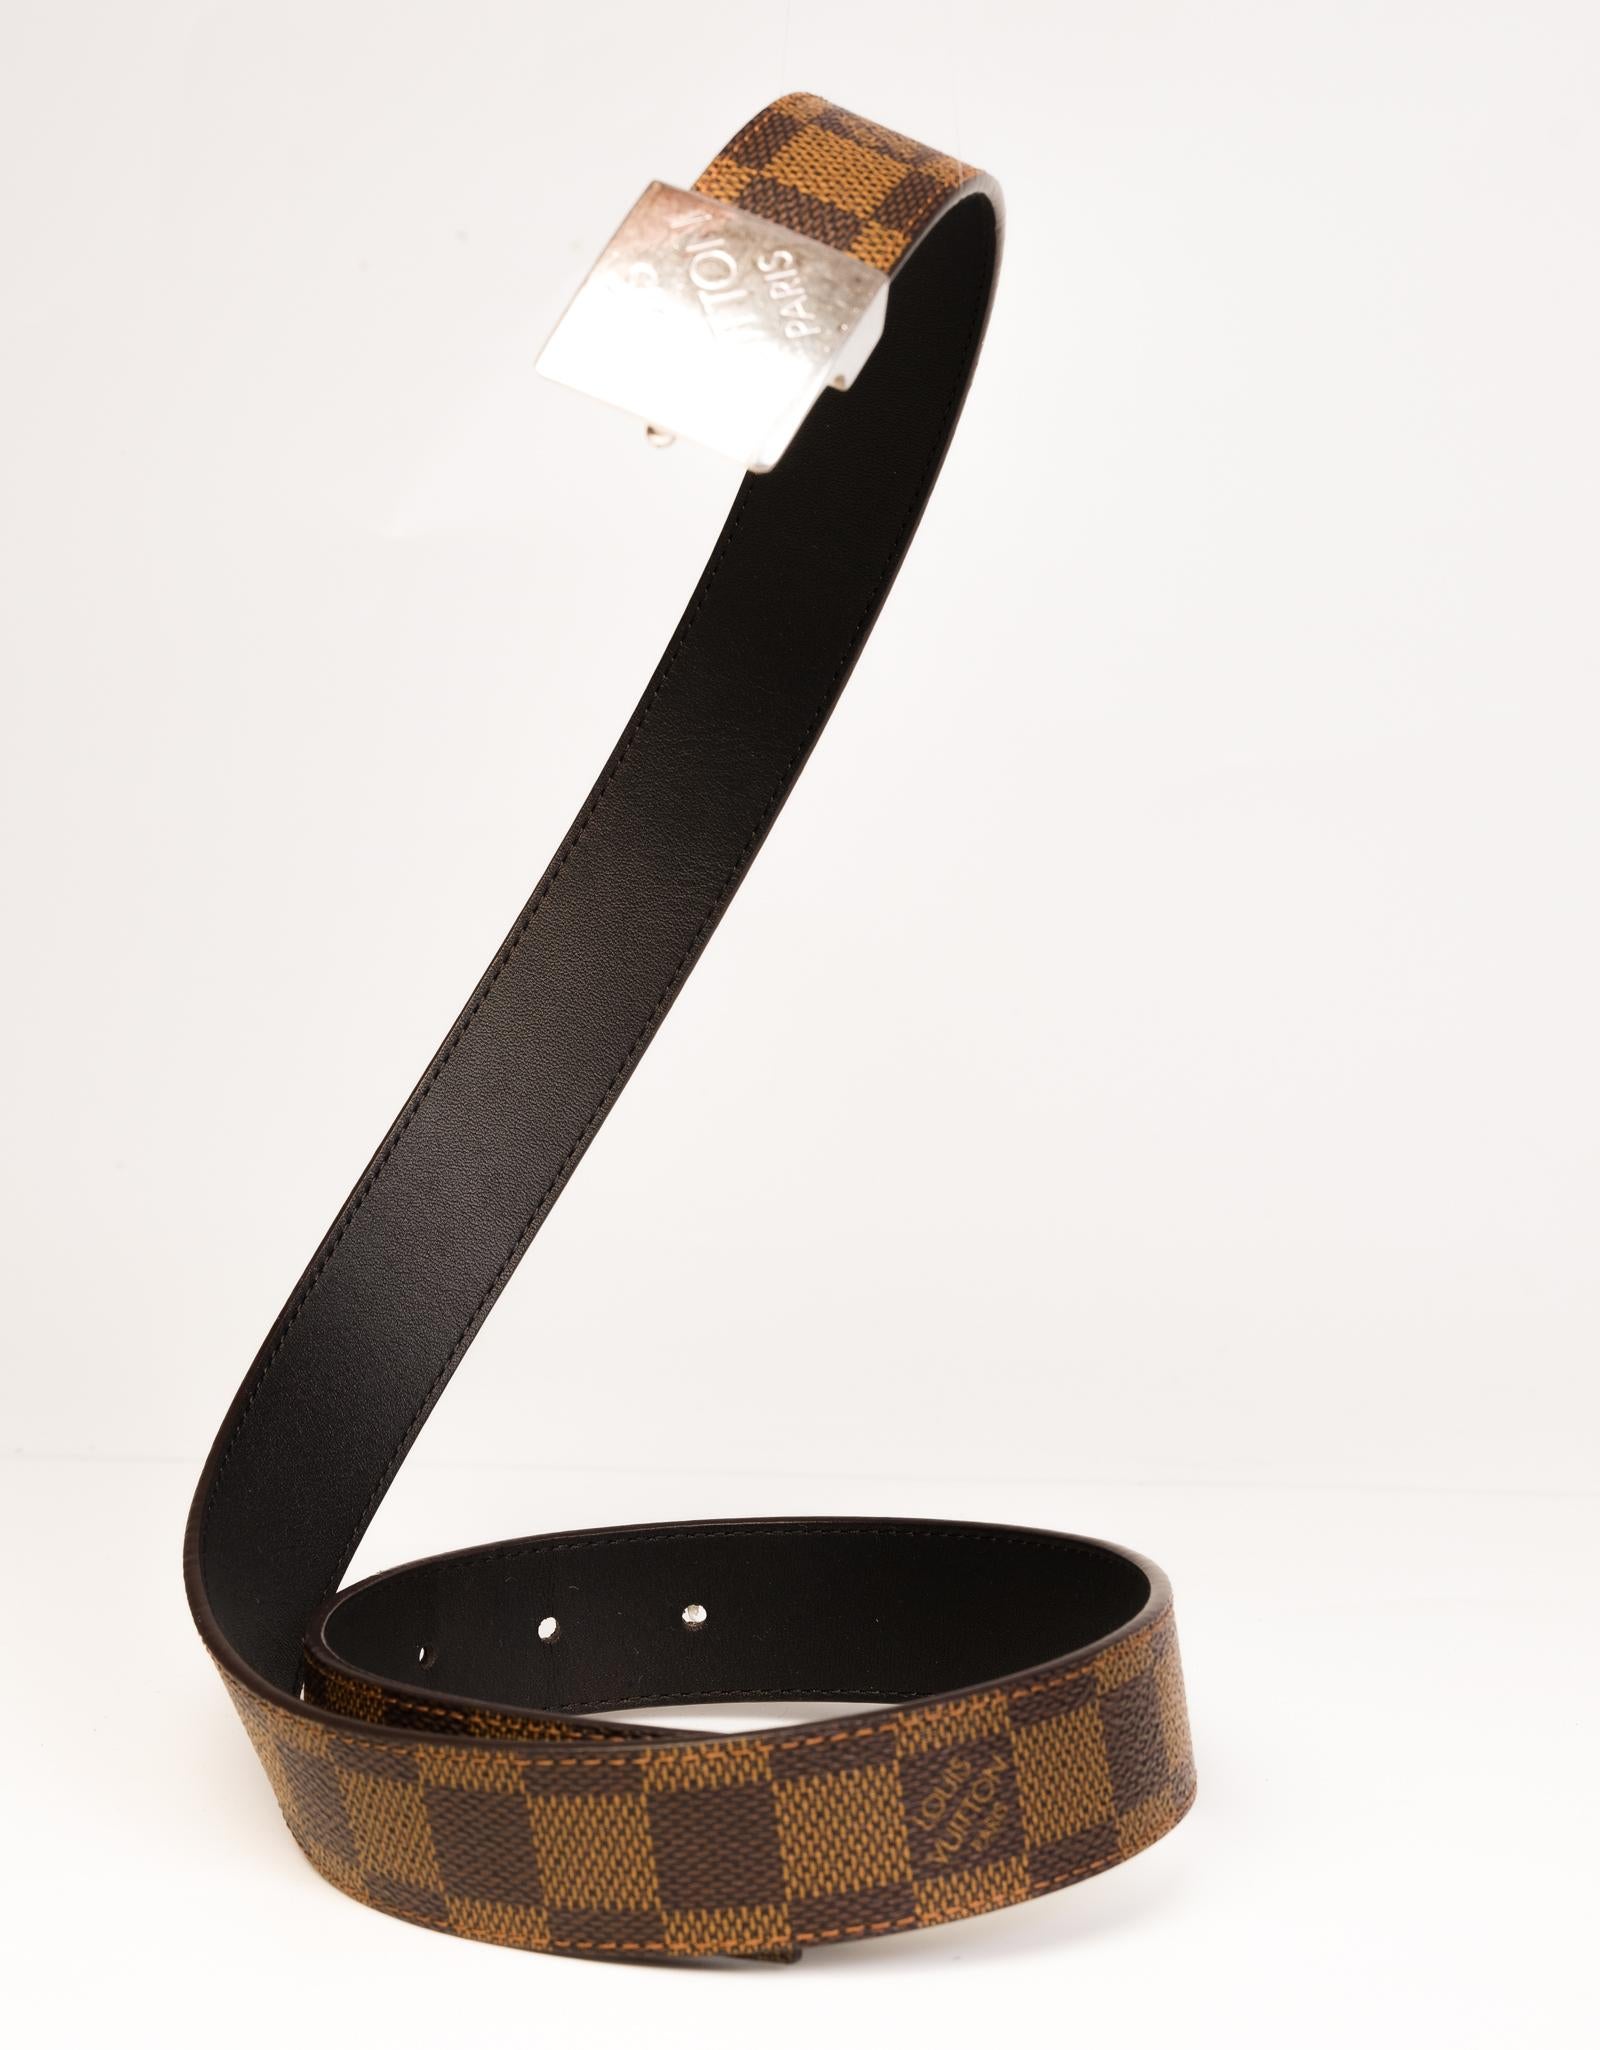 Louis Vuitton Gürtel aus beschichtetem Damier Ebene Canvas mit einer silberfarbenen Blockschnalle. 

FARBE: Braun
MATERIAL: Beschichtetes Segeltuch
ABMESSUNGEN: L 35,5